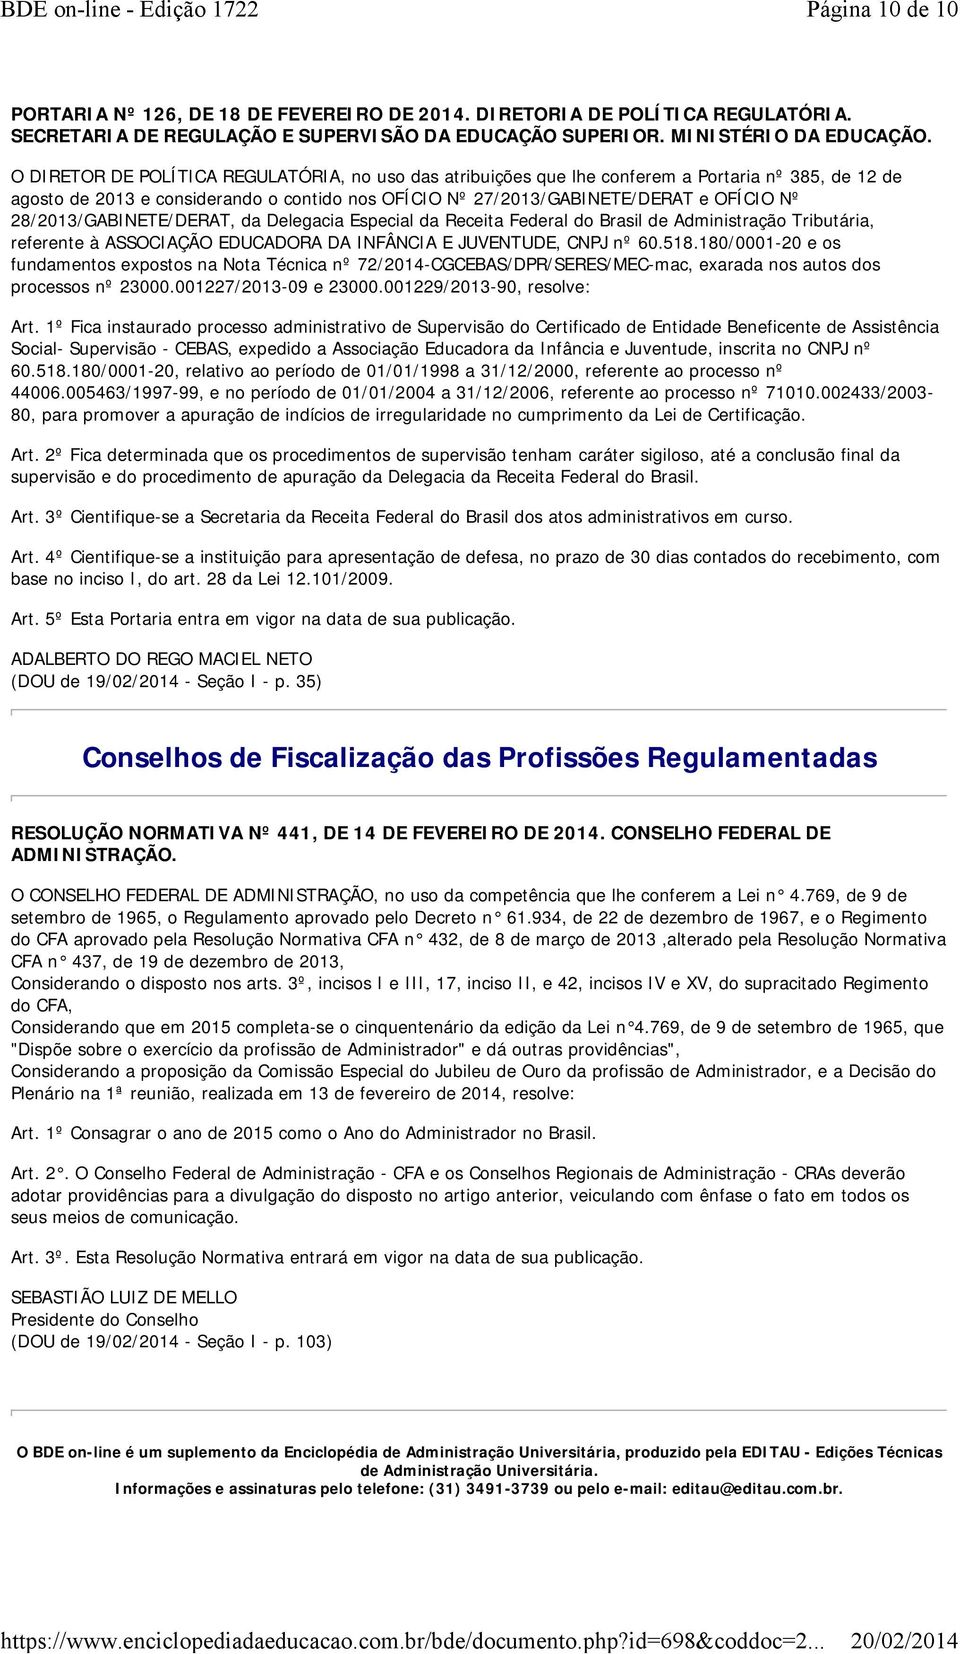 Brasil de Administração Tributária, referente à ASSOCIAÇÃO EDUCADORA DA INFÂNCIA E JUVENTUDE, CNPJ nº 60.518.